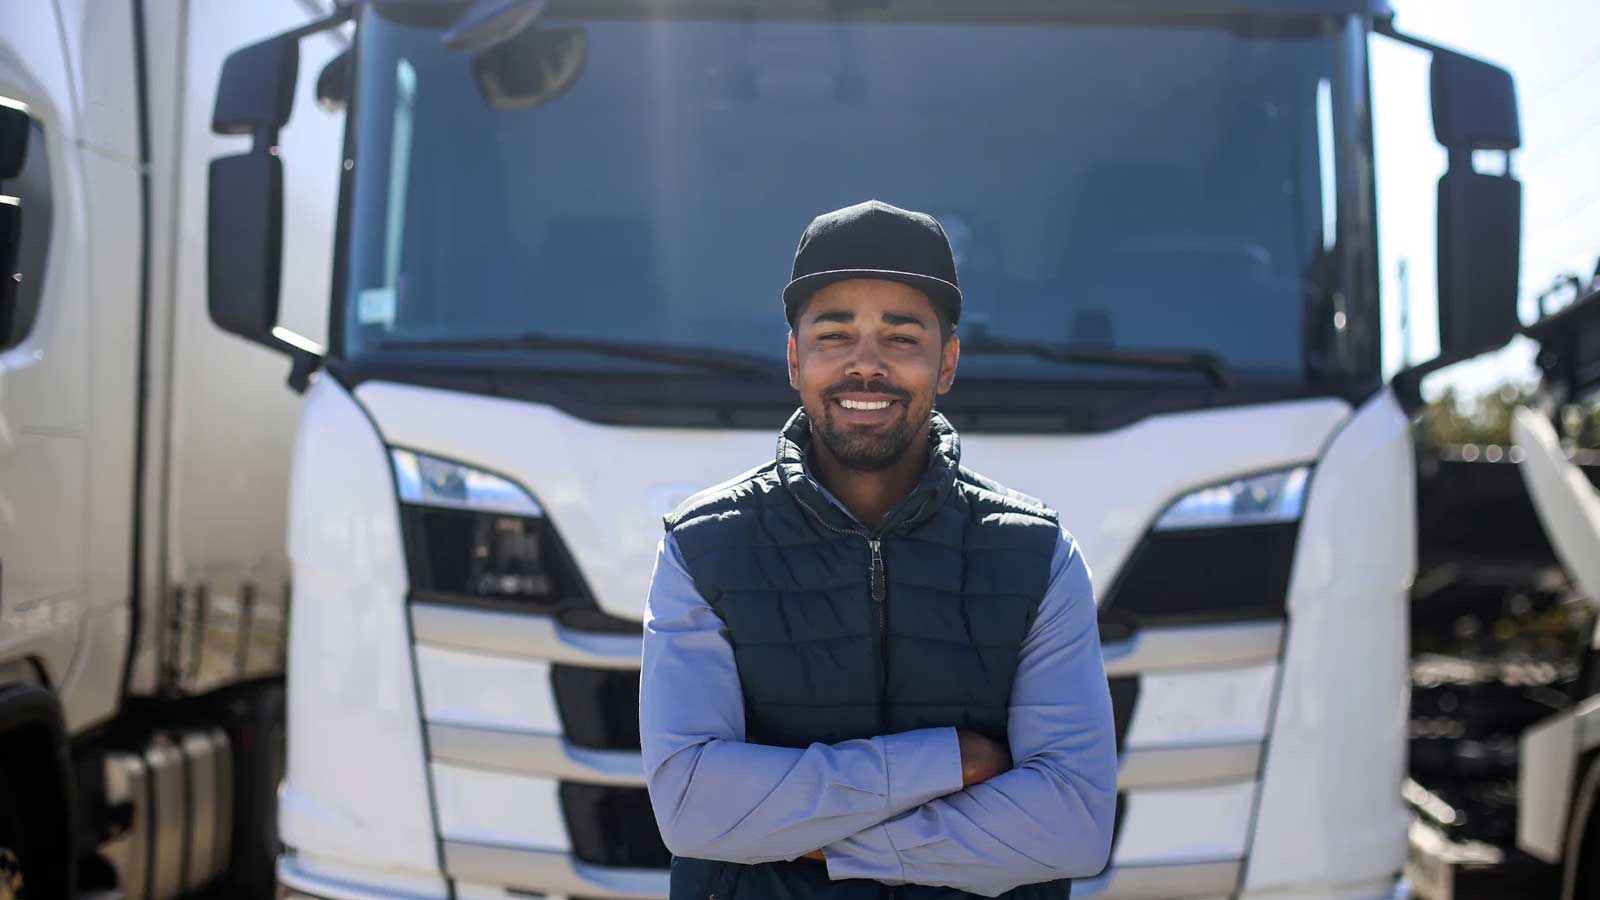 بررسی درآمد راننده کامیون در آلمان در بلاگ کاربین